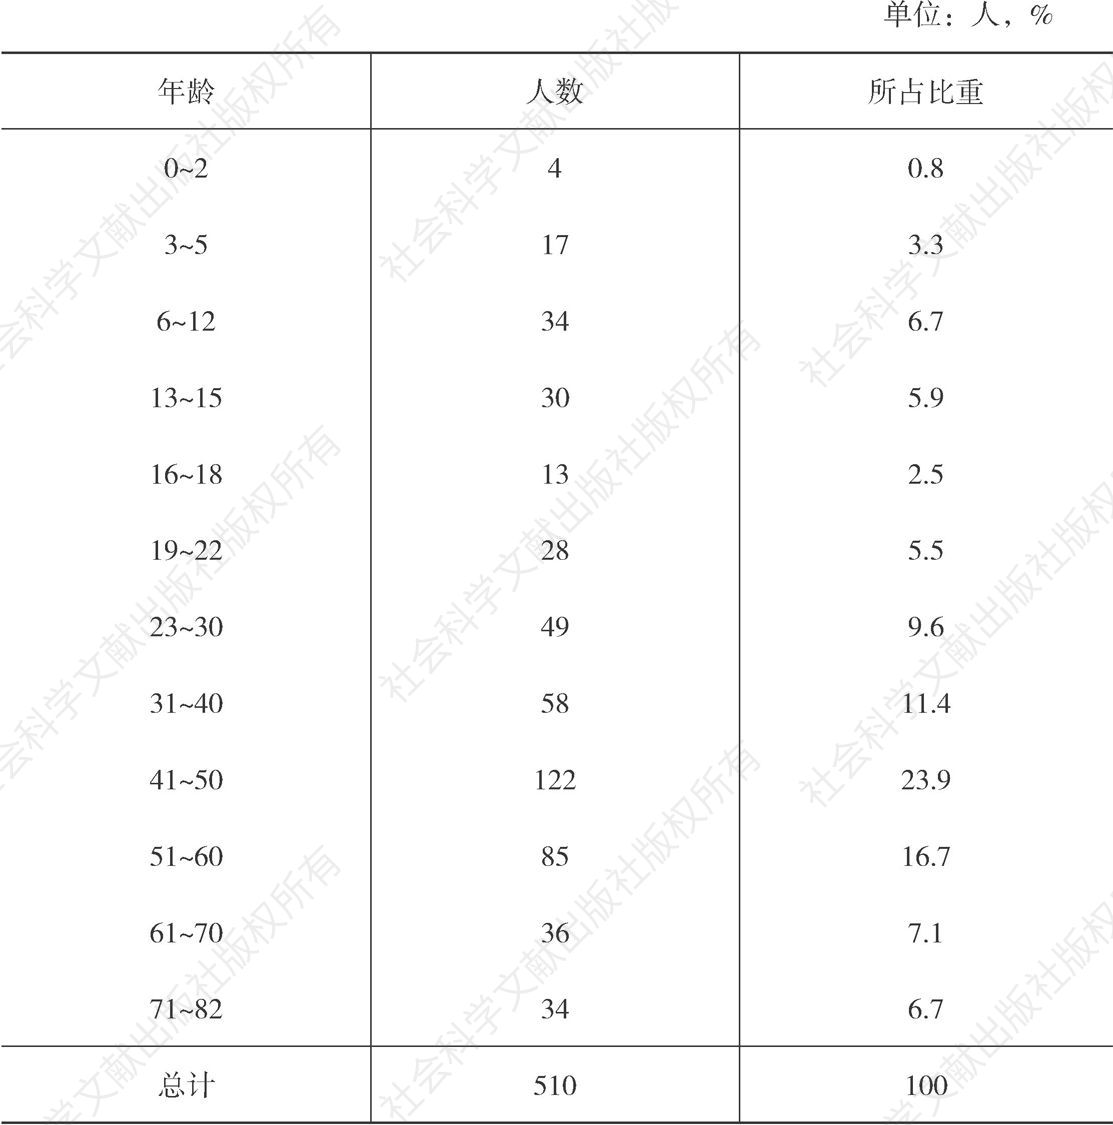 表2-2 作干村2016年人口年龄结构